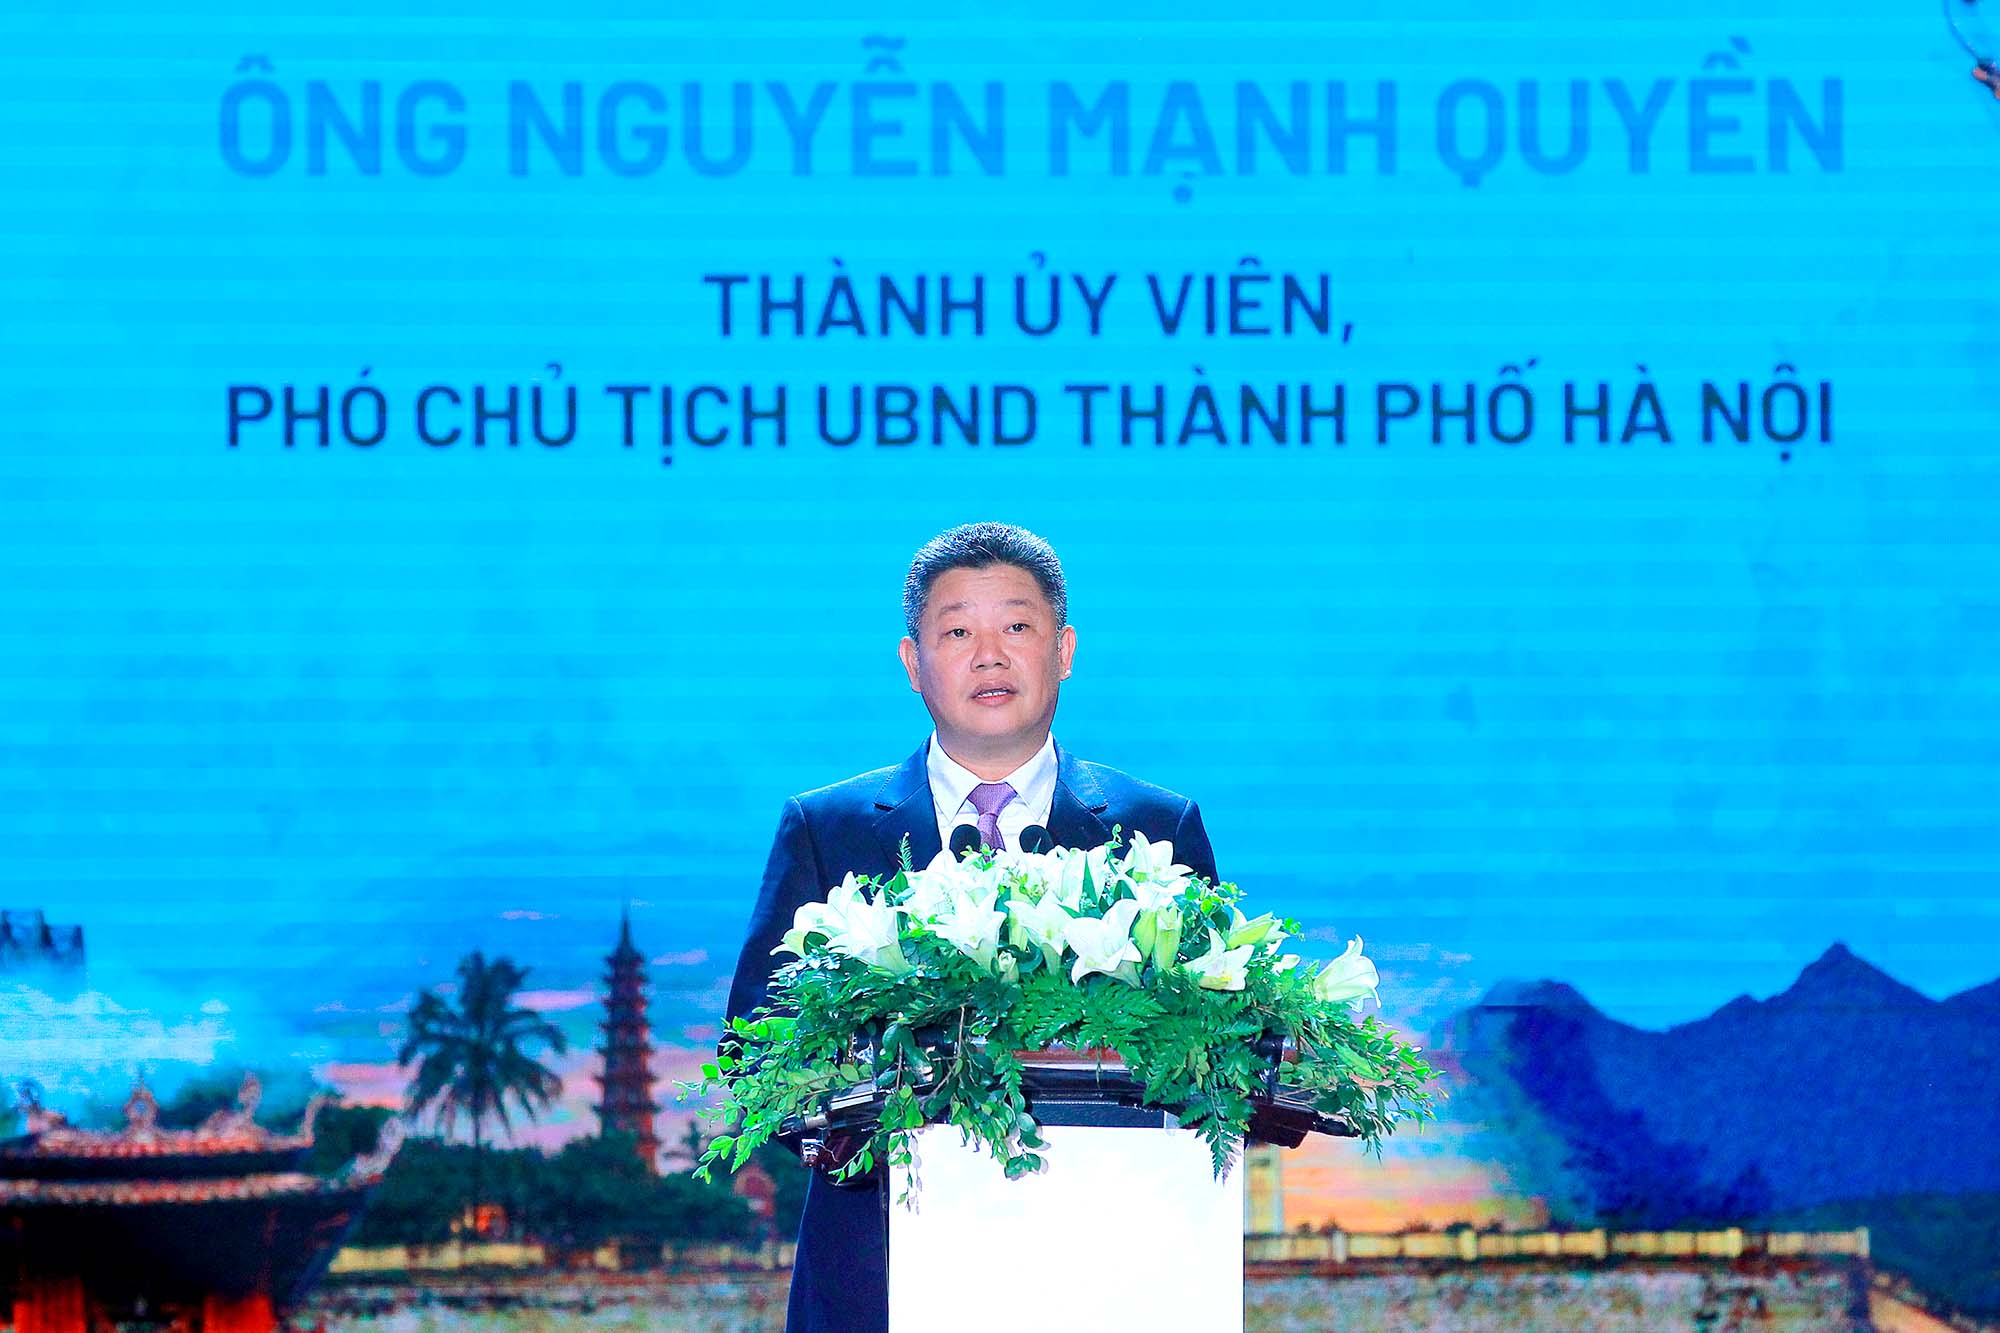 Phó chủ tịch UBND Thành phố Hà Nội Nguyễn Mạnh Quyền phát biểu tại buổi lễ  